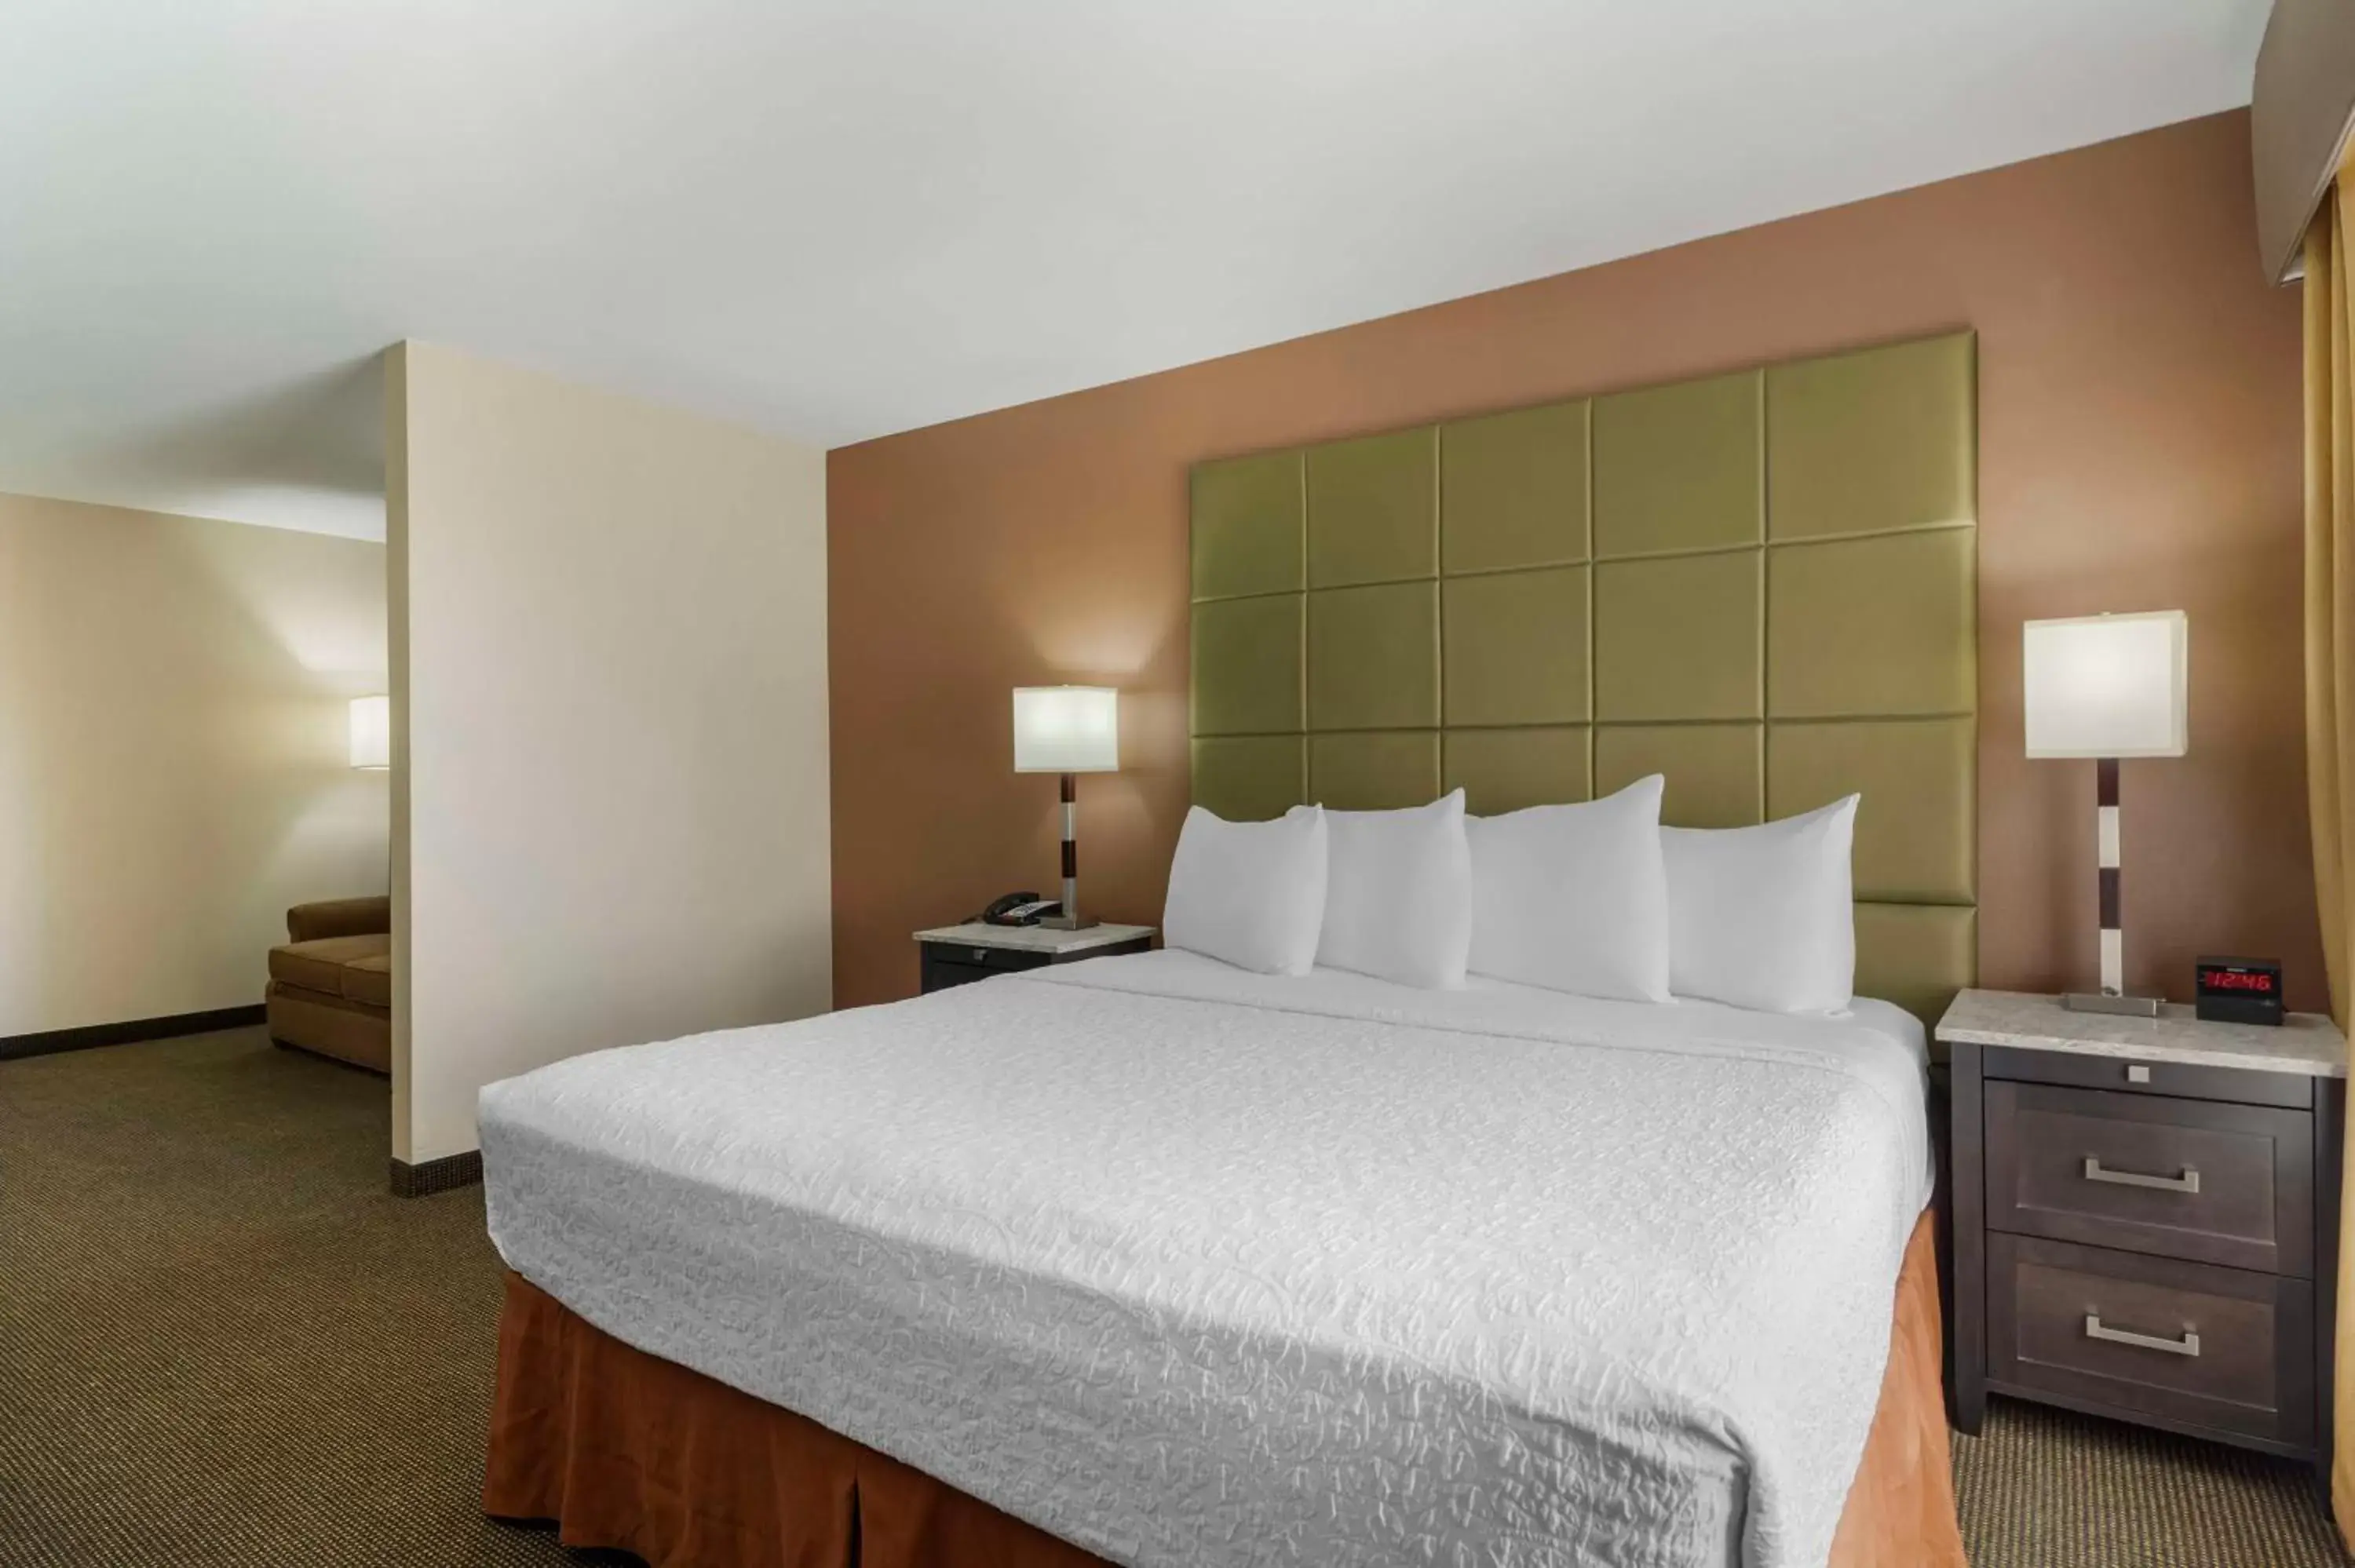 Bedroom, Bed in Best Western Plus Country Inn & Suites